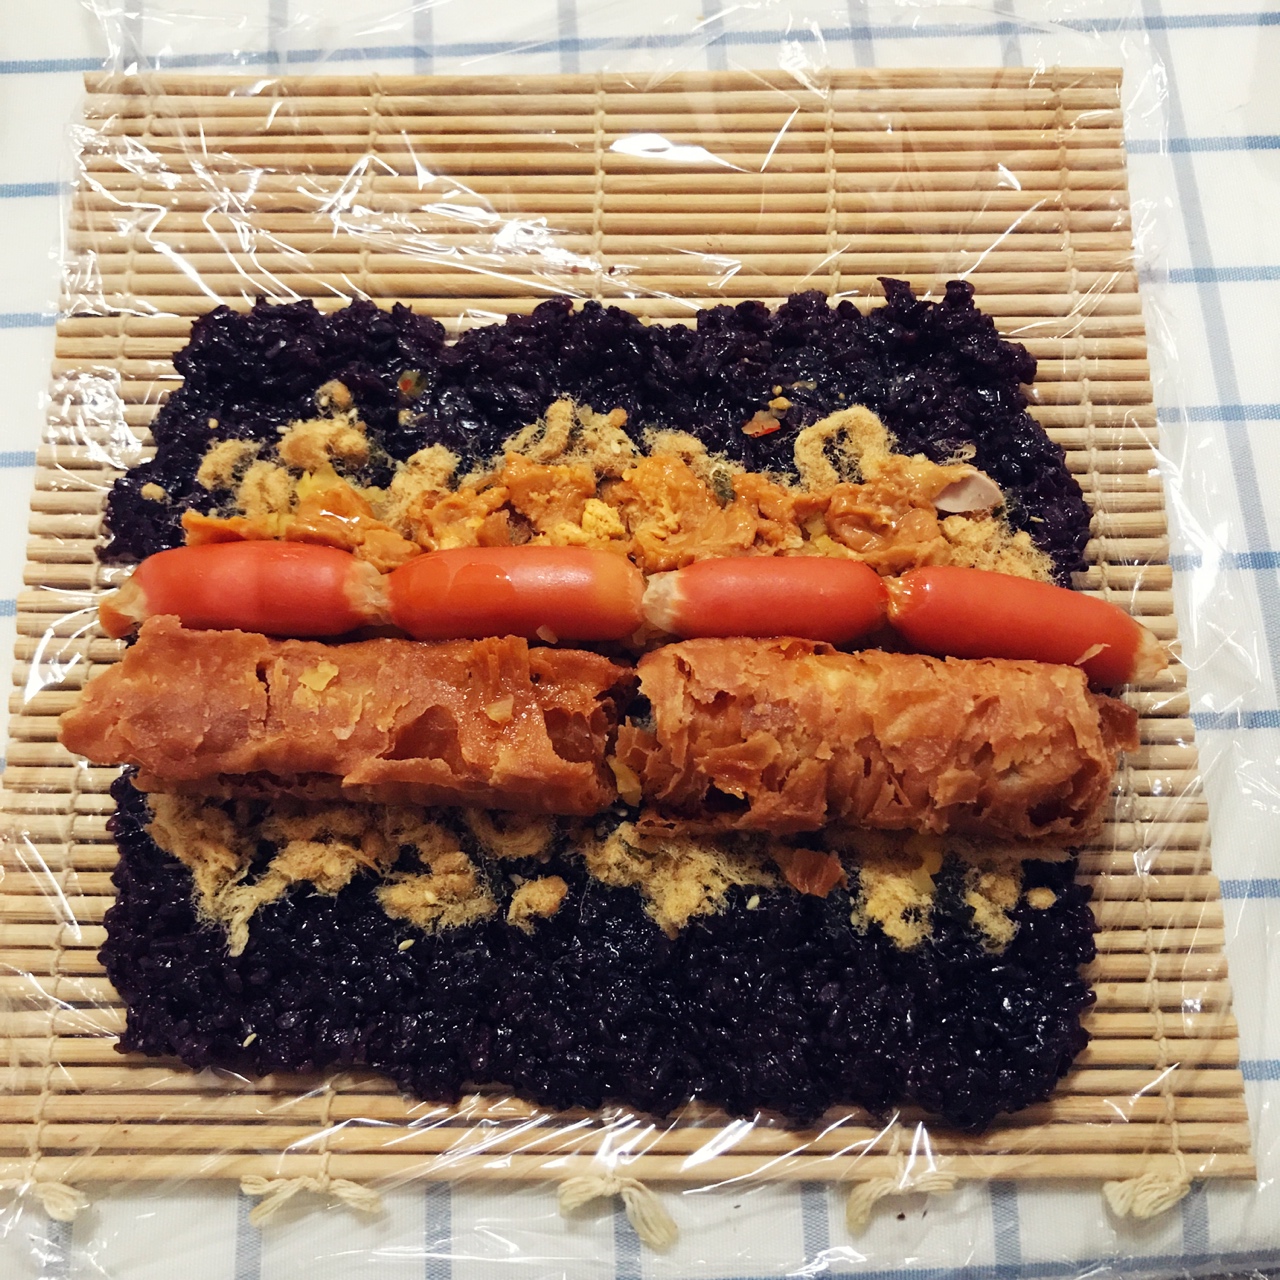 汪汪是汪小狗做的黑米粢饭团